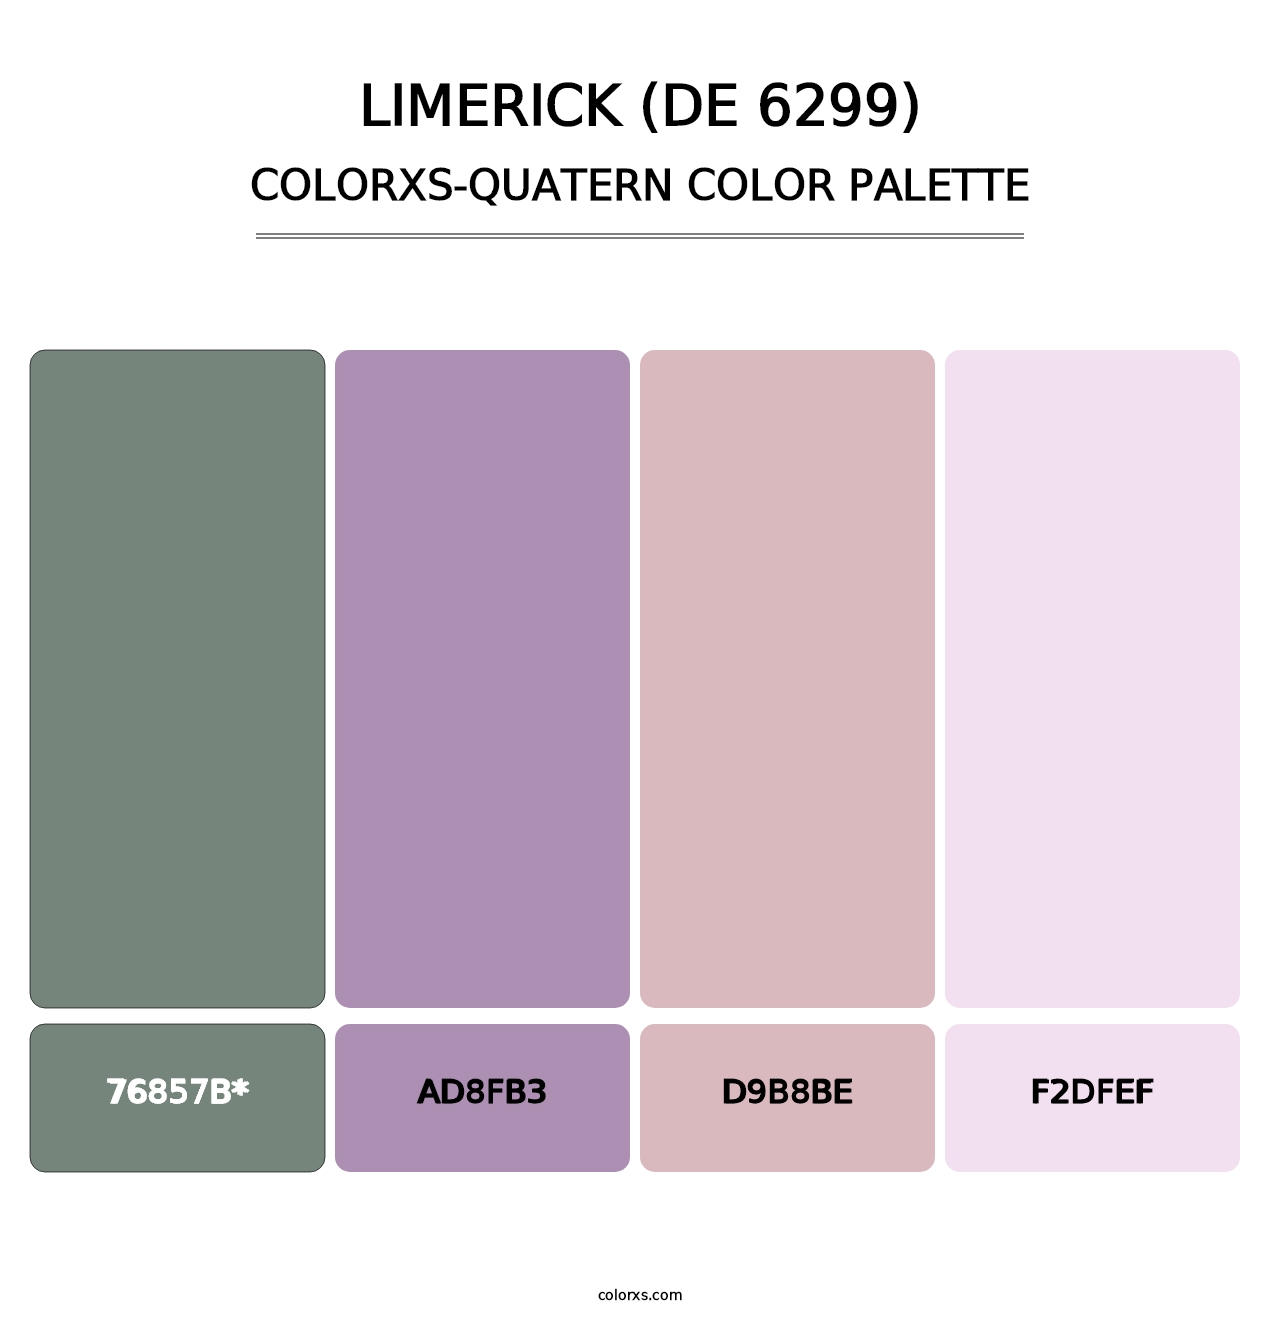 Limerick (DE 6299) - Colorxs Quatern Palette